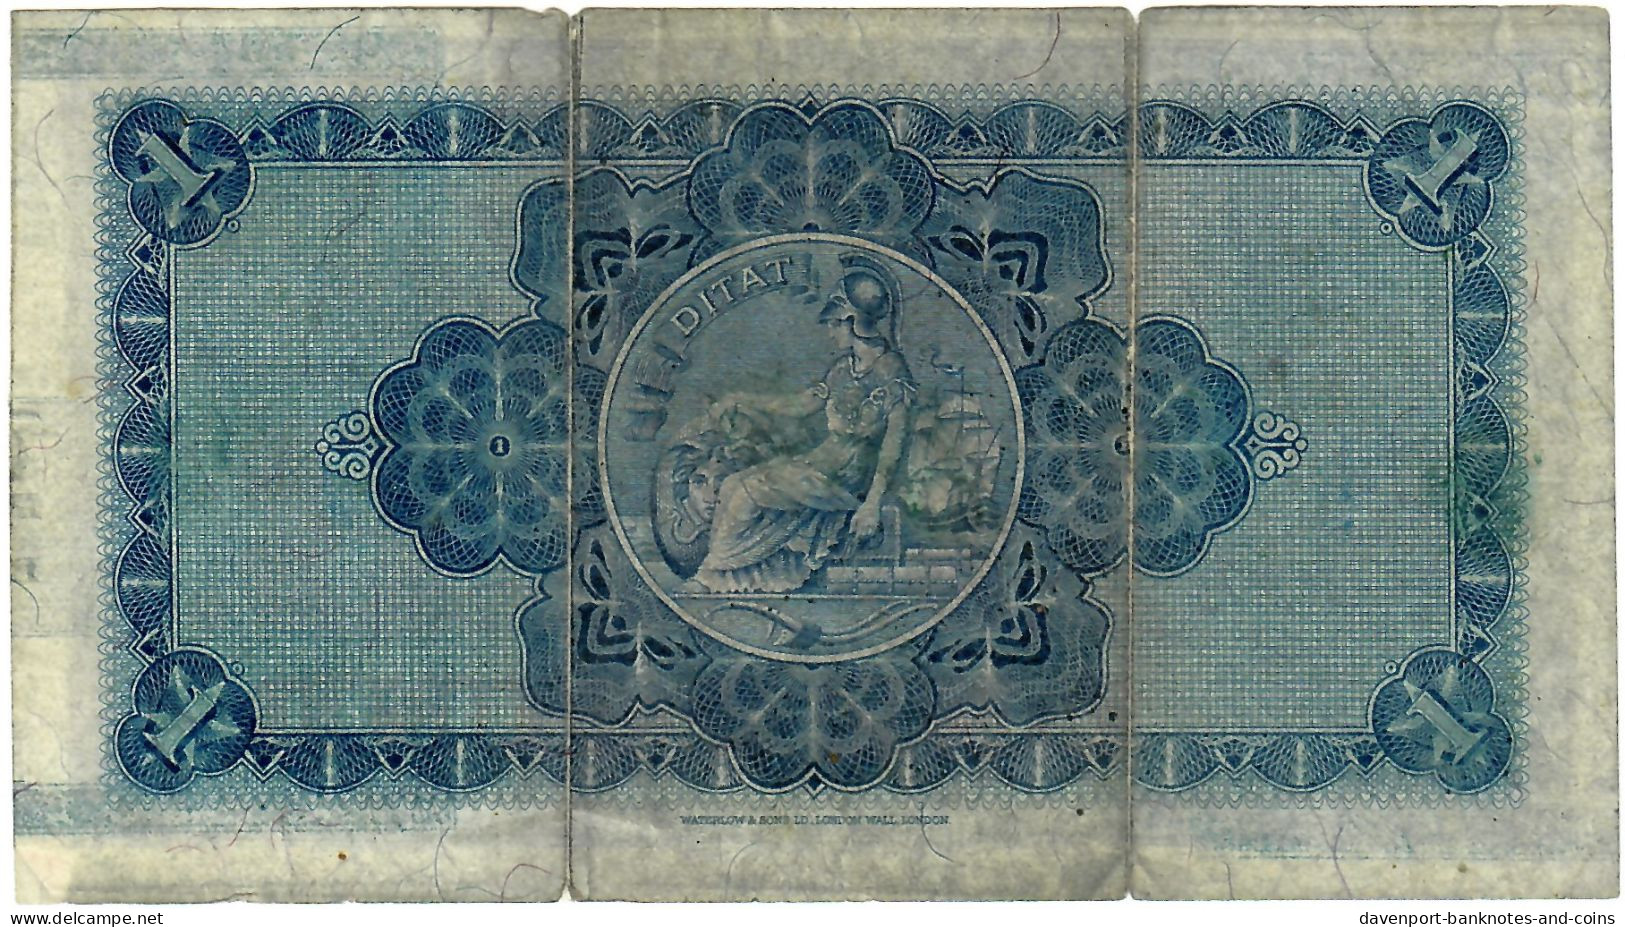 Scotland 1 Pound 1944 F British Linen Bank - 1 Pound